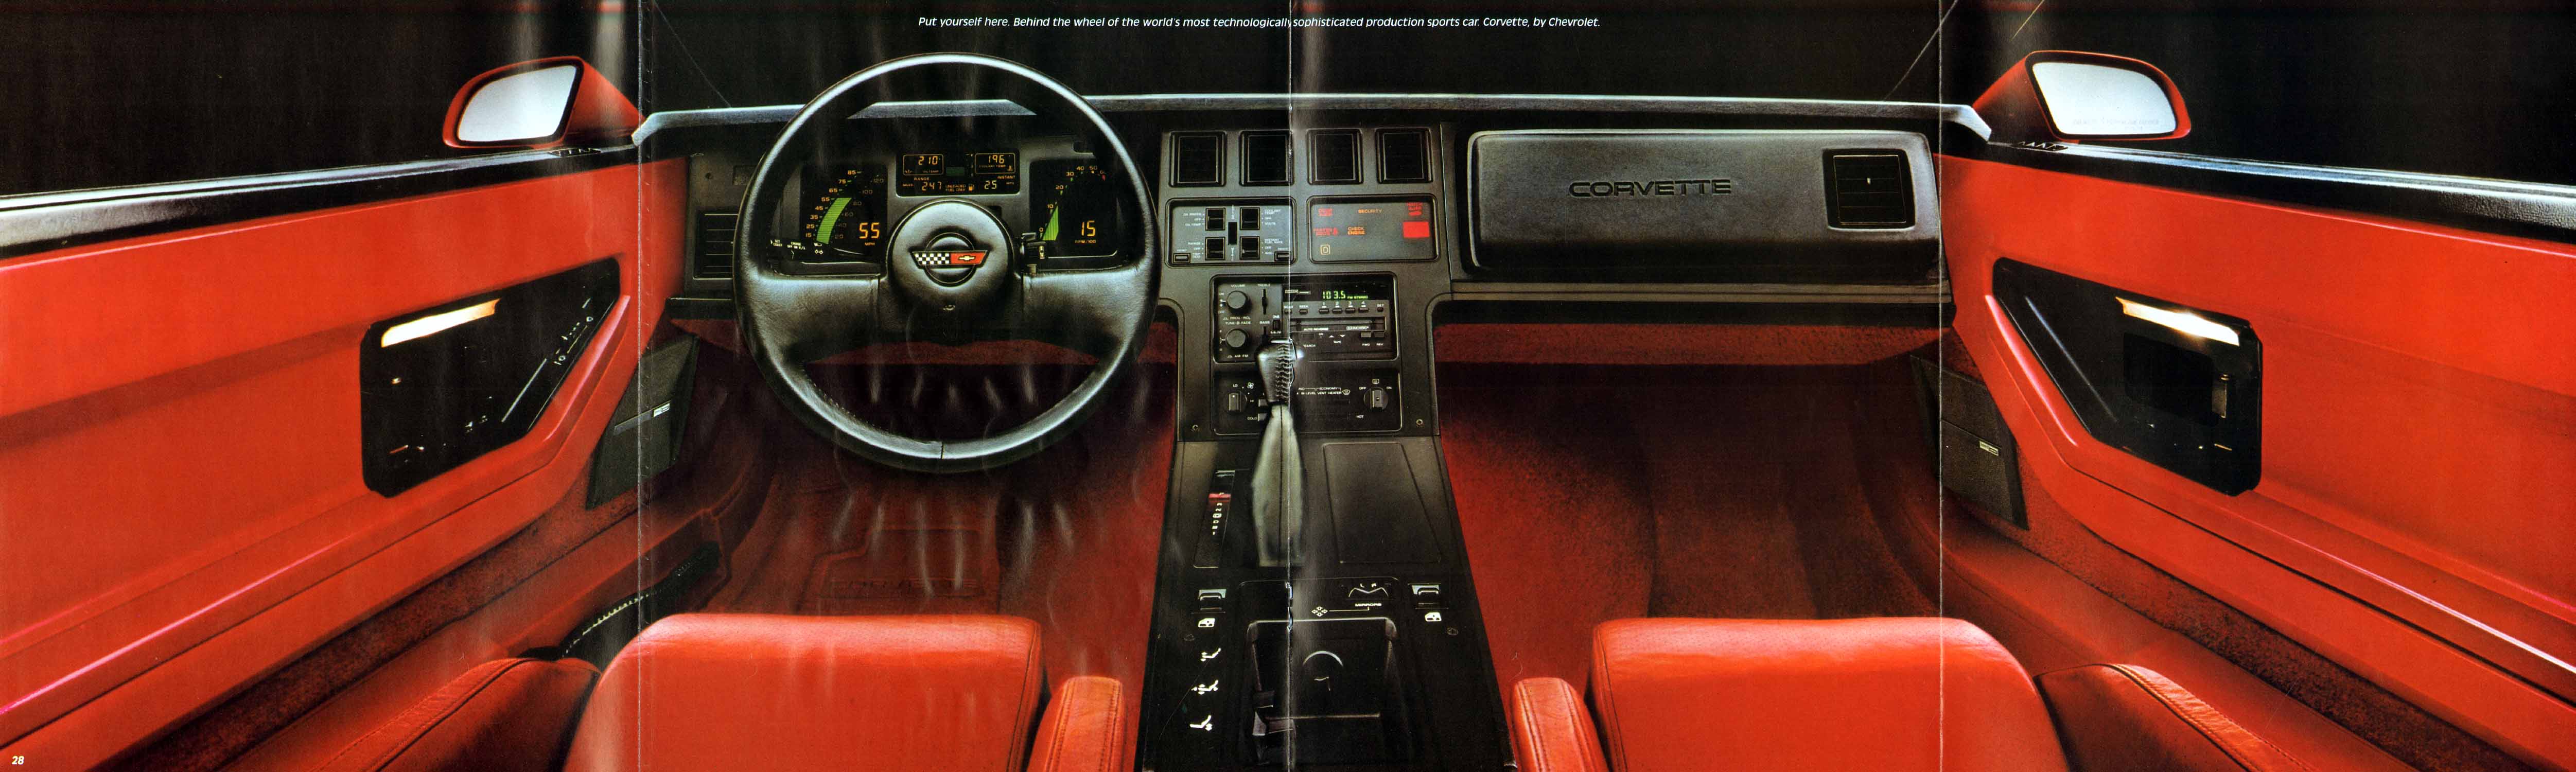 1985_Chevrolet_Corvette-28-29-30-31